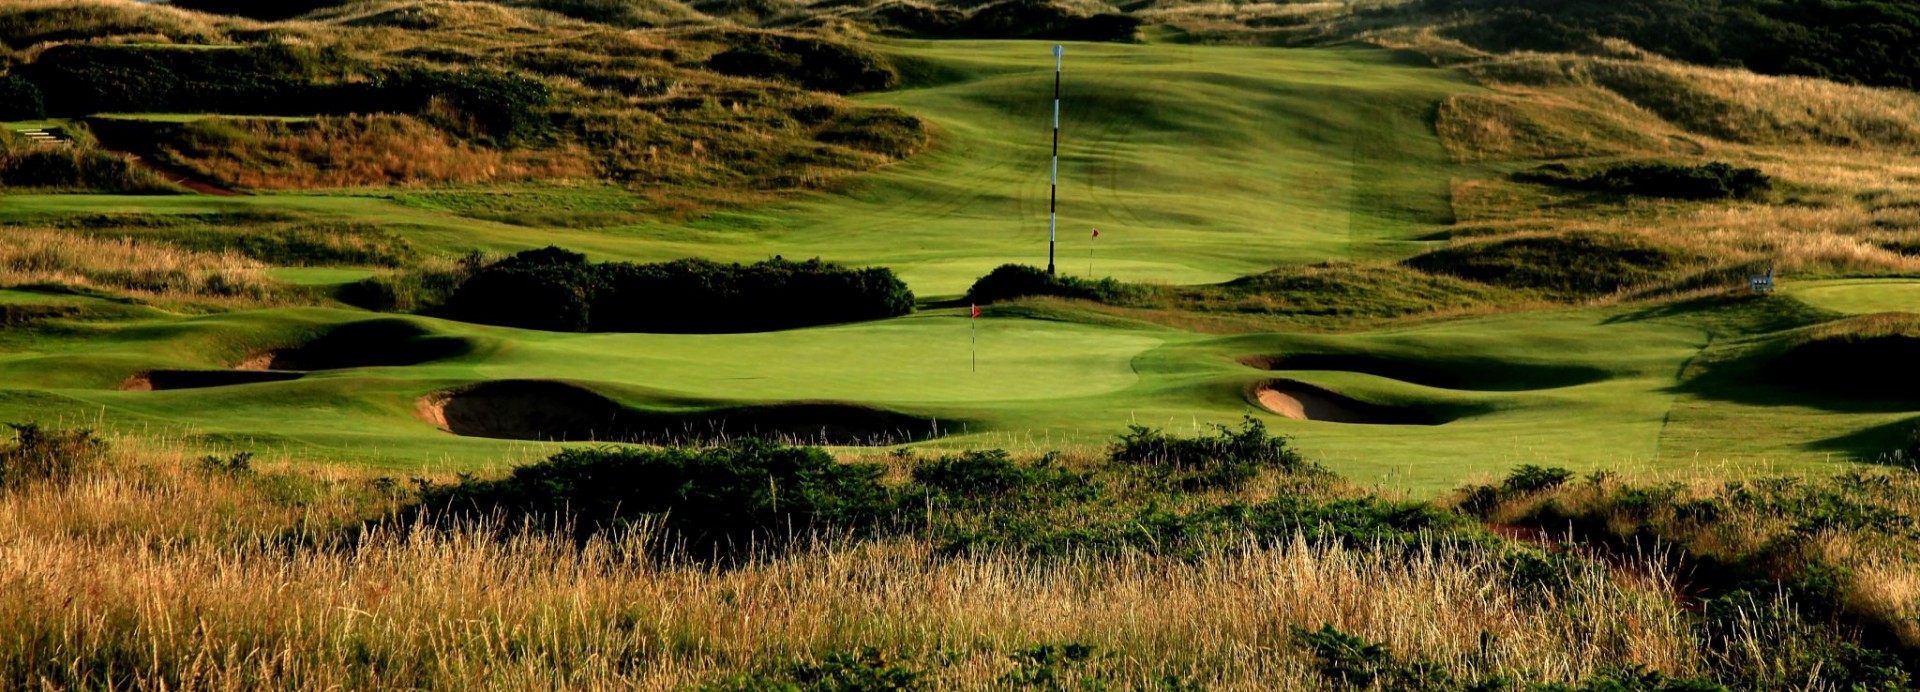 Royal Portrush Golf Club - Dunluce Course  | Golfové zájezdy, golfová dovolená, luxusní golf